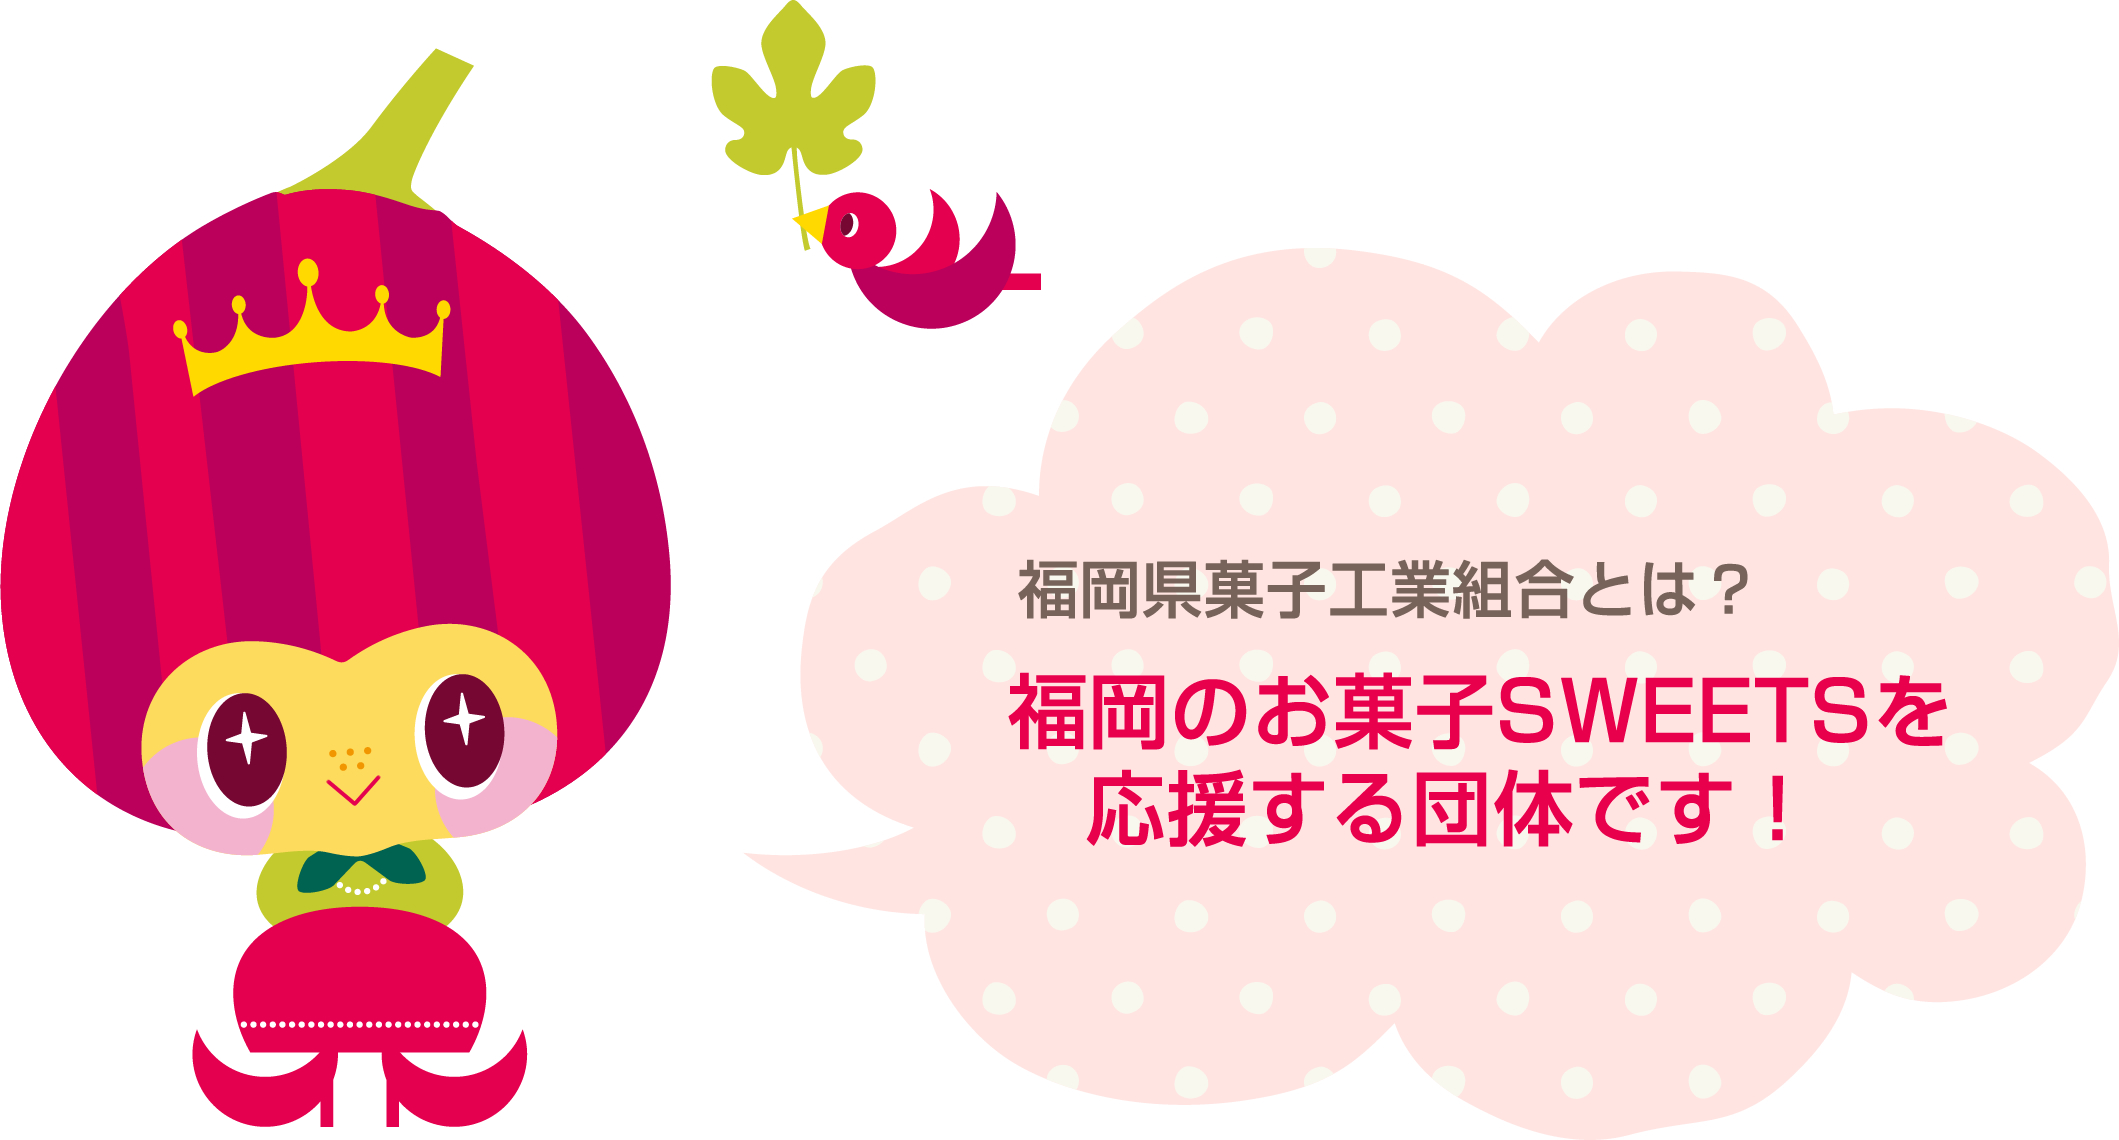 福岡県菓子工業組合とは？ 福岡のお菓子SWEETSを応援する団体です！ 